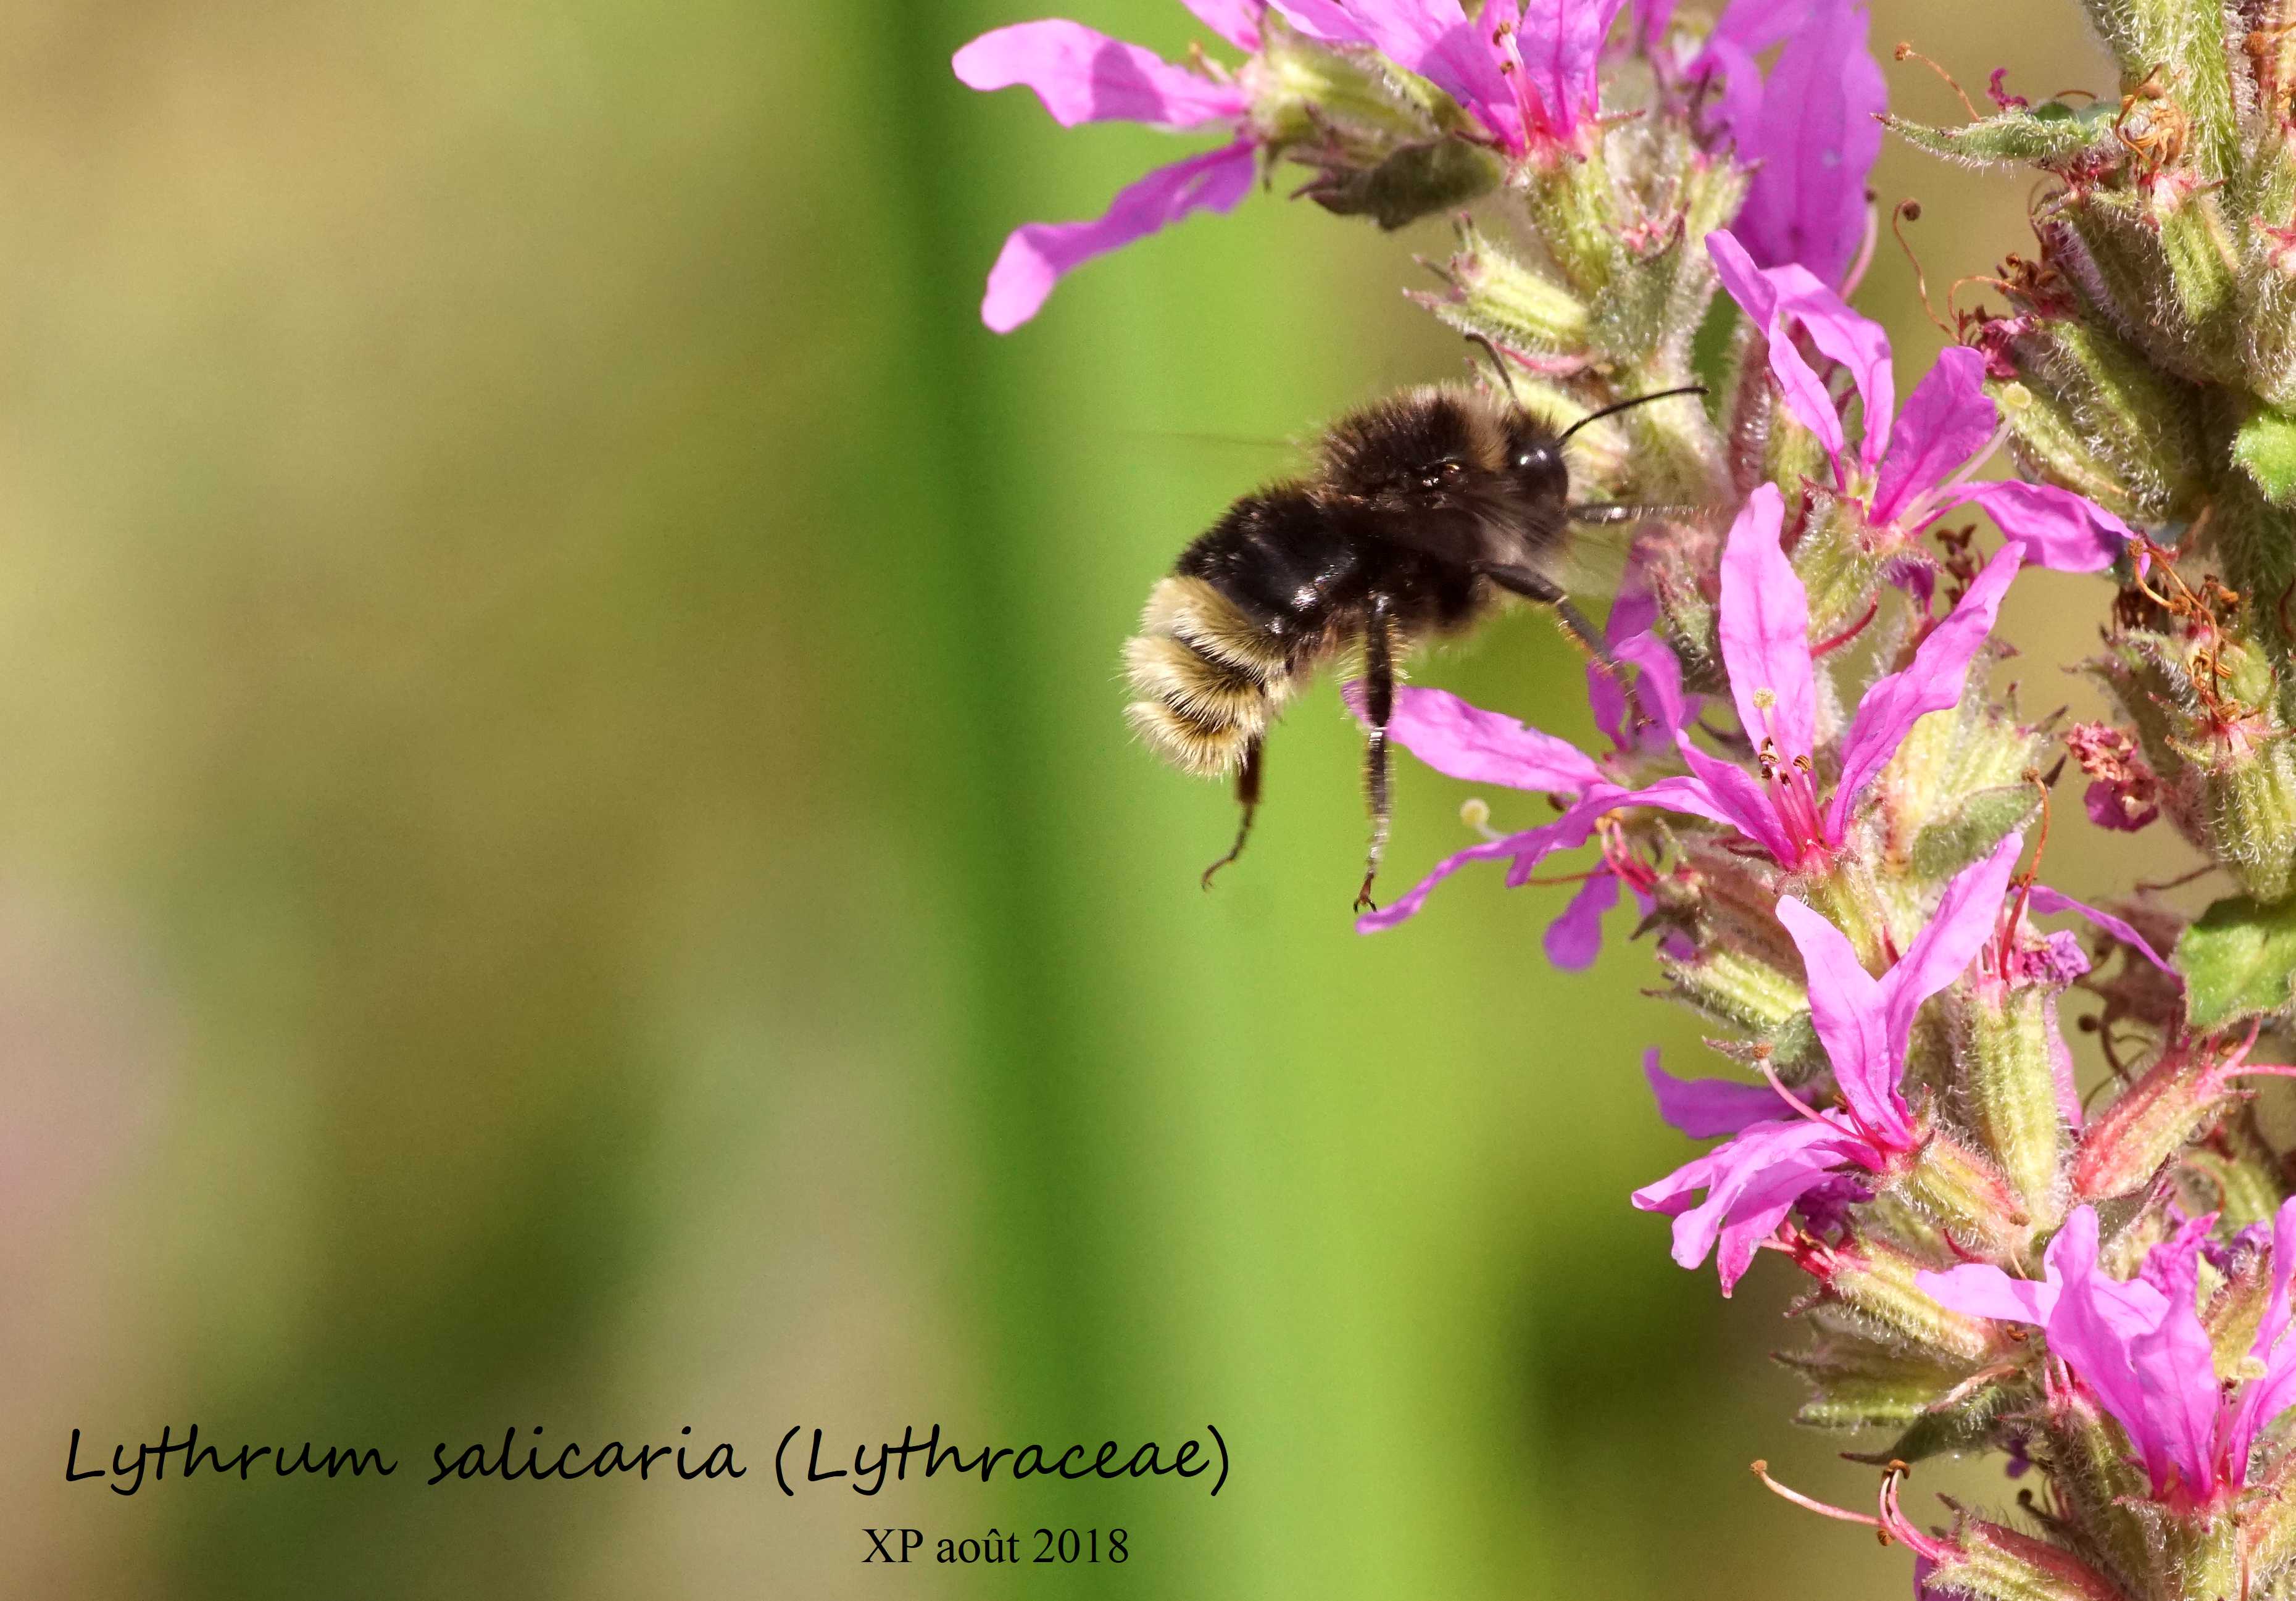 Faire connaissance :
Tache colorée source de nectar et de pollen ? (Bourdon)
Plante 